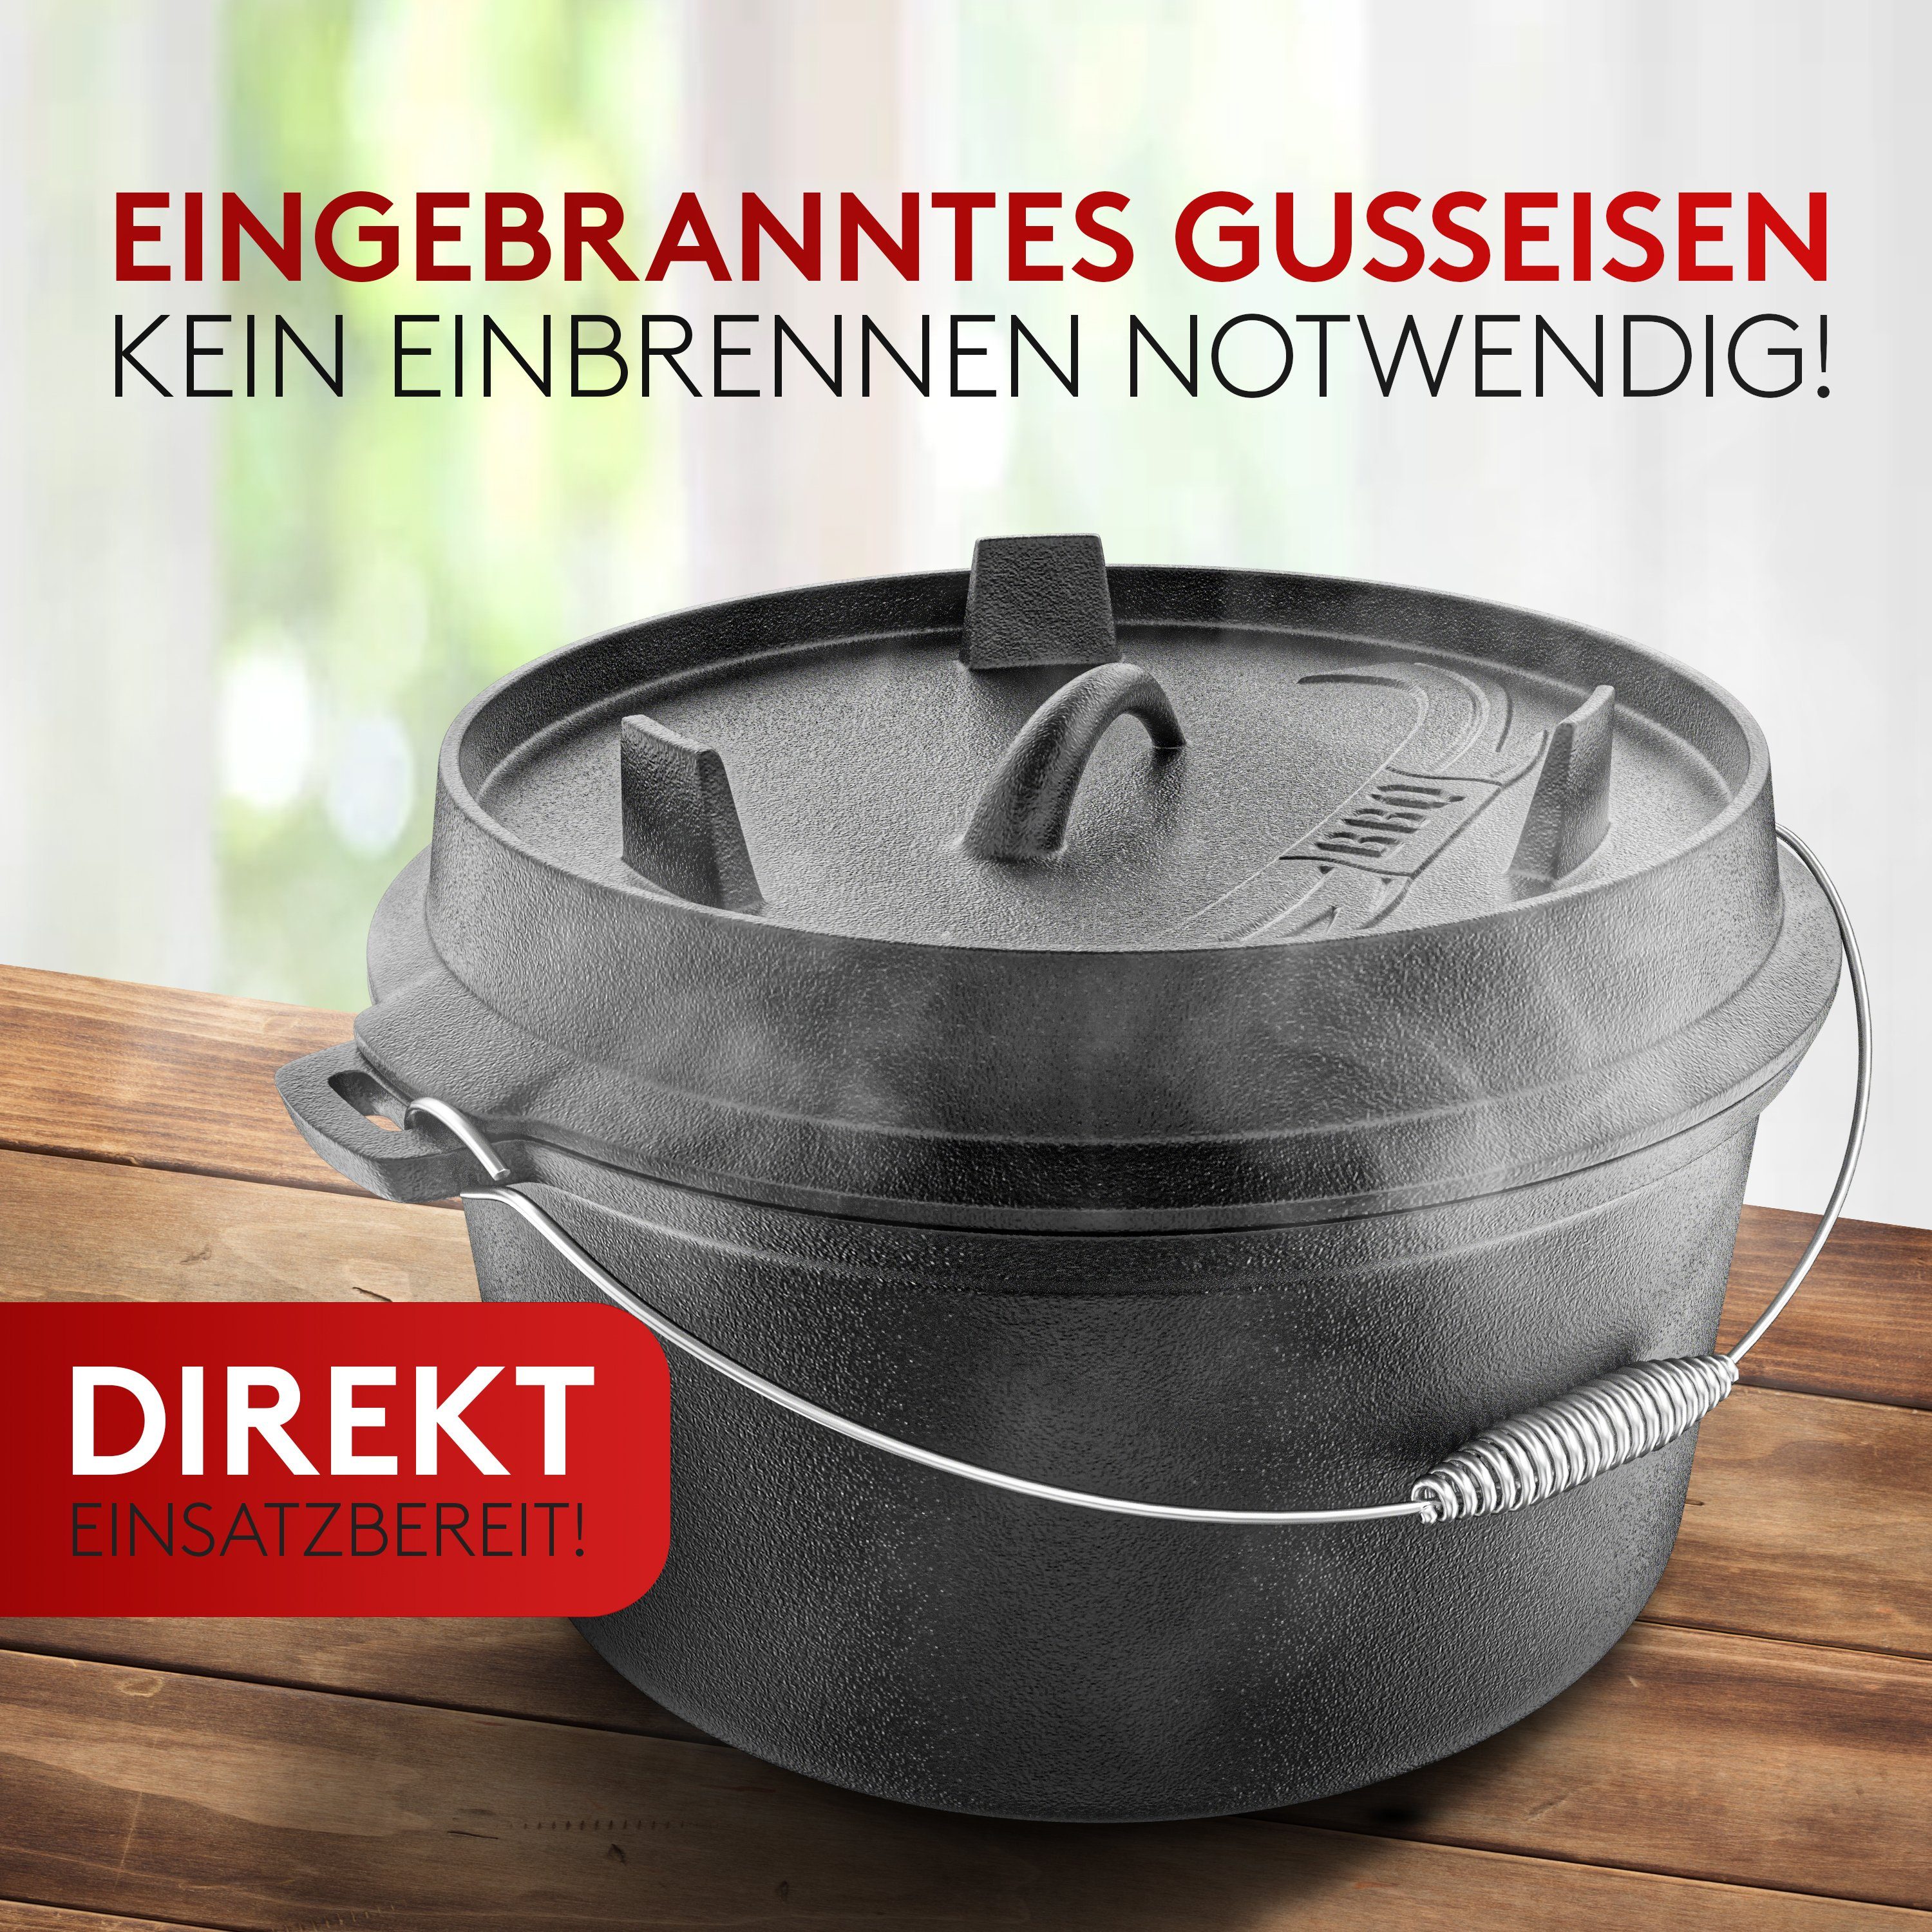 Set BBQ Original] Feuertopf Induktion, Oven Oven - - [7L] Edelstahl Amandi Für Gusseisen, [Das Dutch Dutch